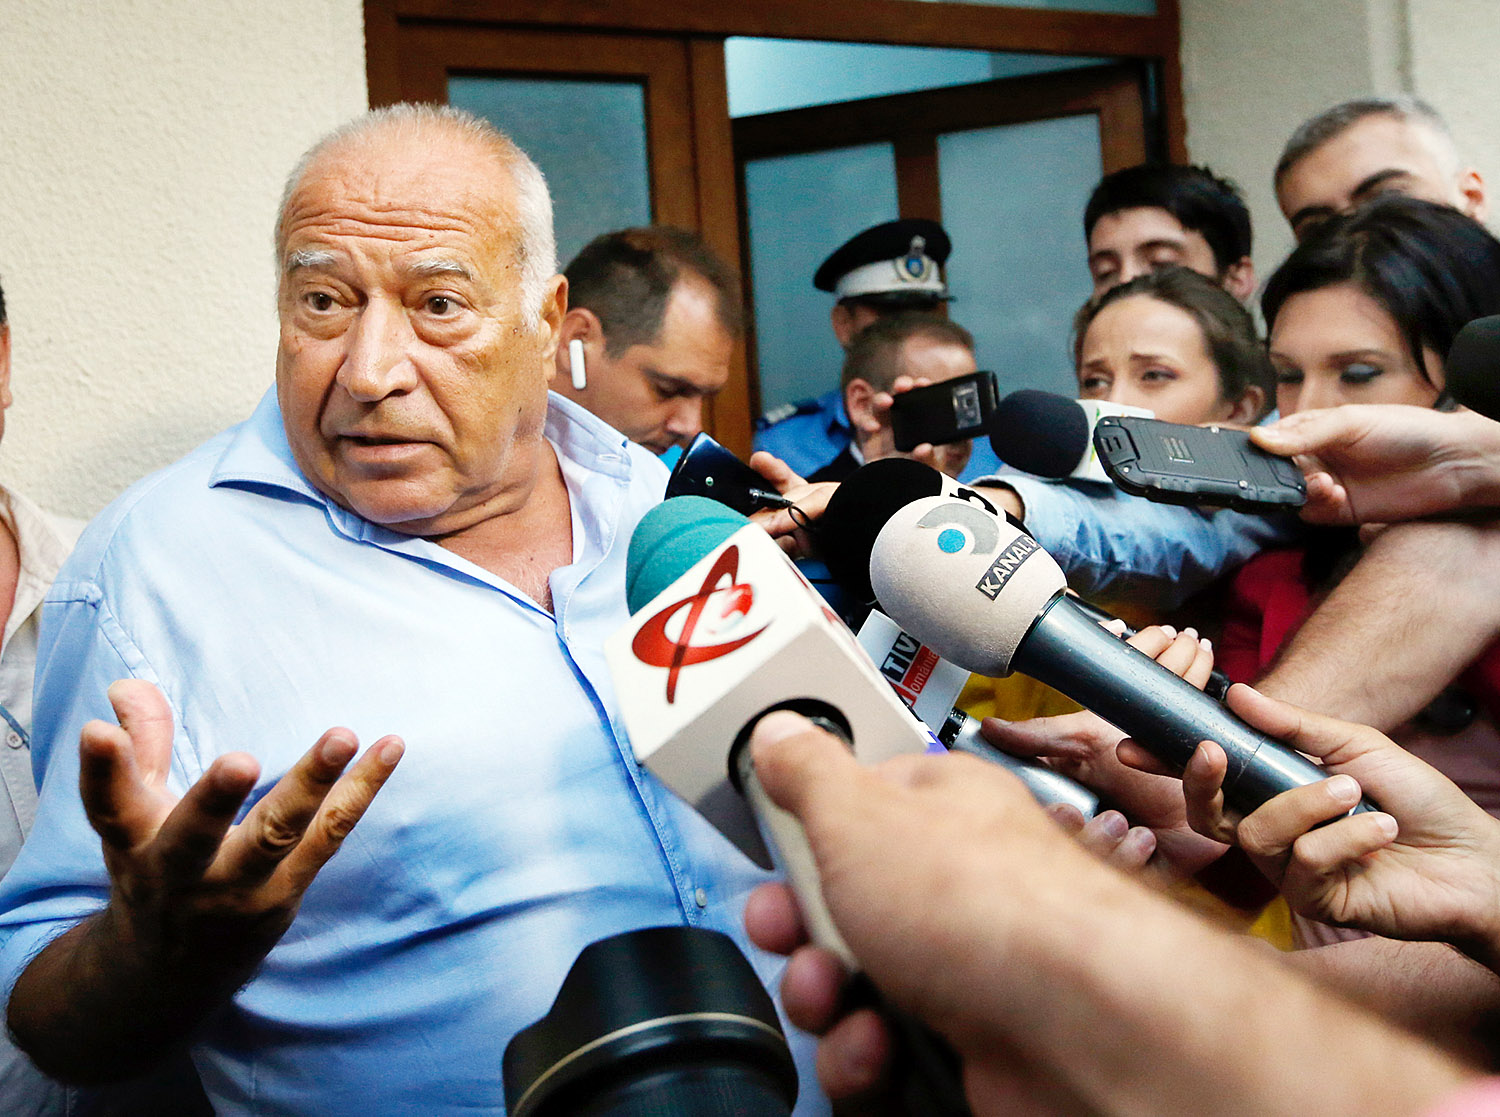 Dan Voiculescu szenátor-üzletember júliusban nyilatkozott a sajtónak a korrupciós vizsgálati meghallgatást követően